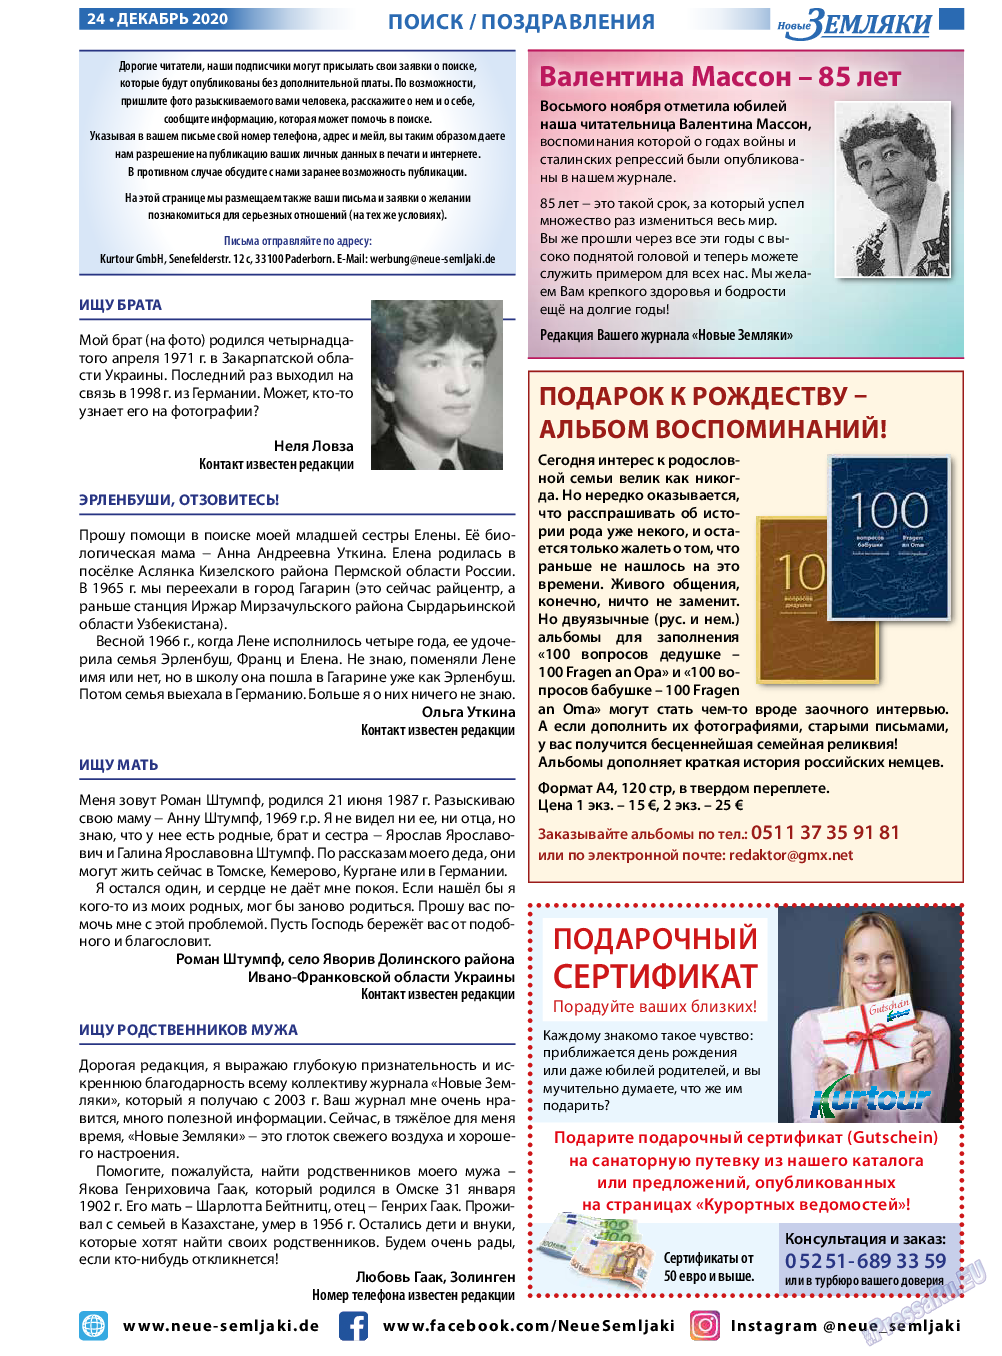 Новые Земляки, газета. 2020 №12 стр.24